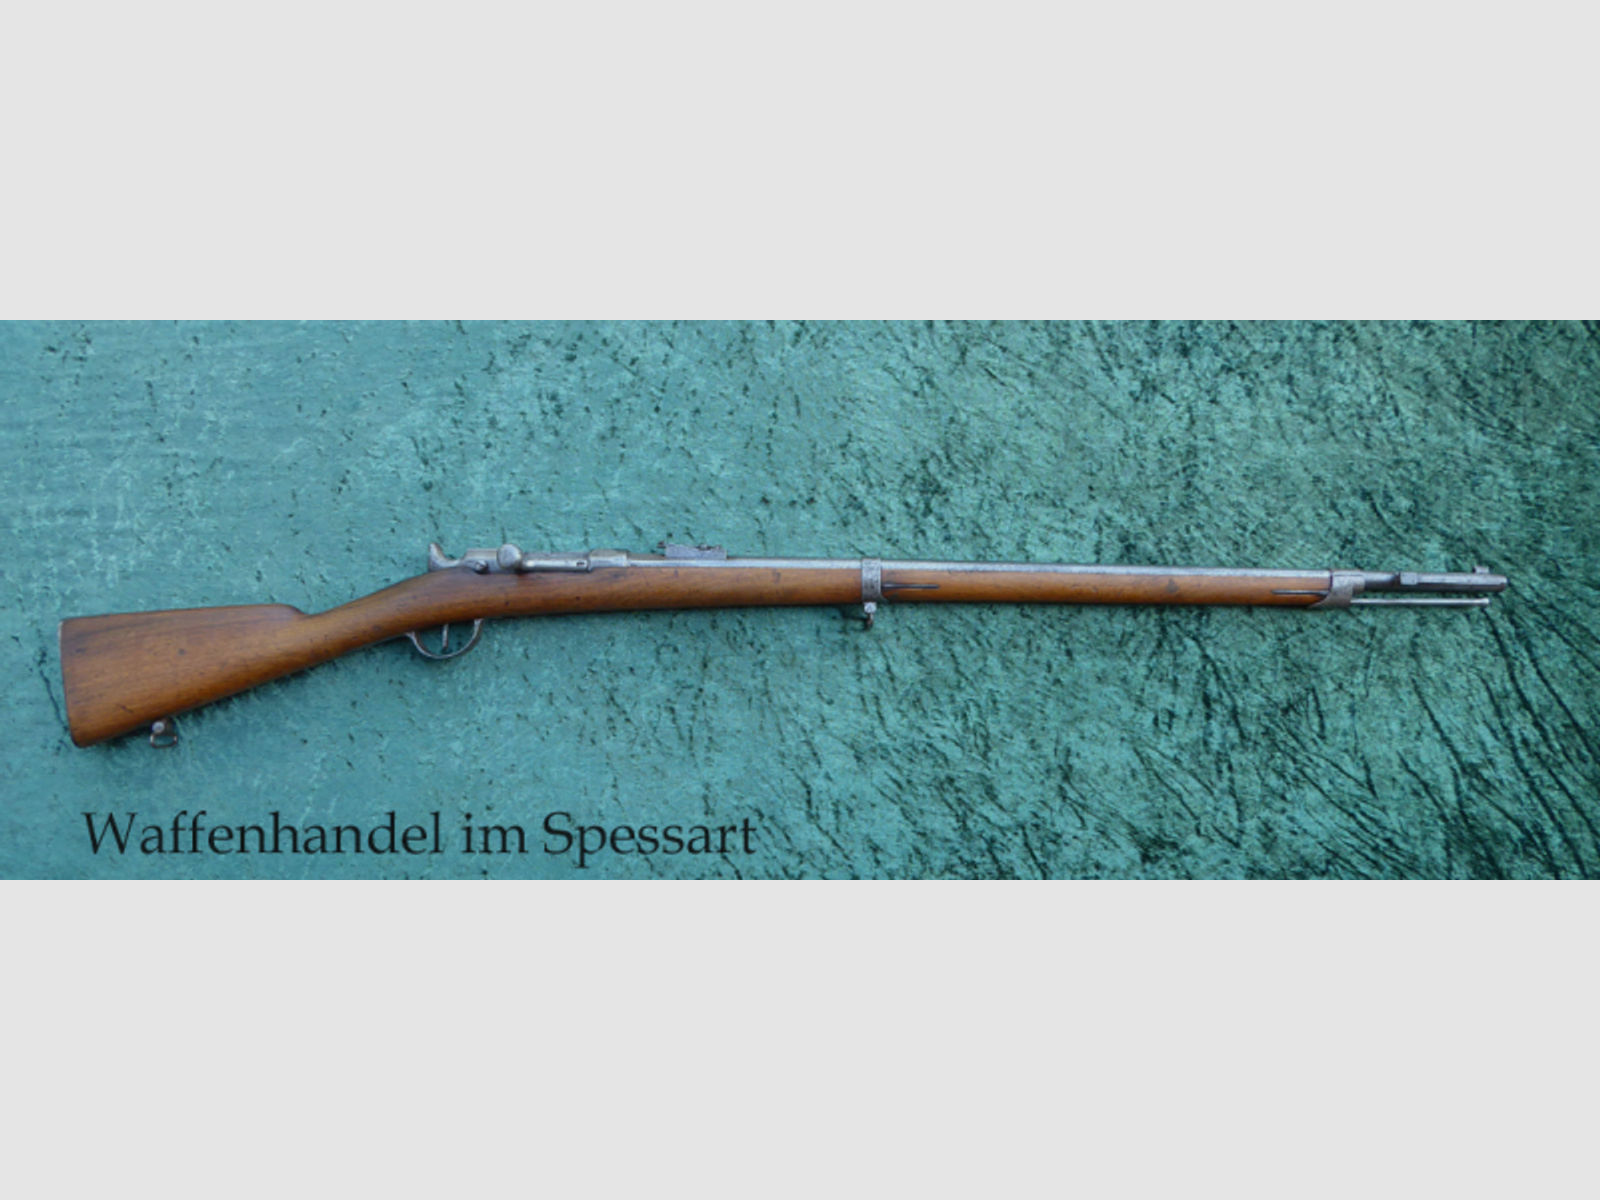 Zündnadelgewehr Chassepot Mle 1866, Chassepot signiert. Mit dem Namen des Erfinders!